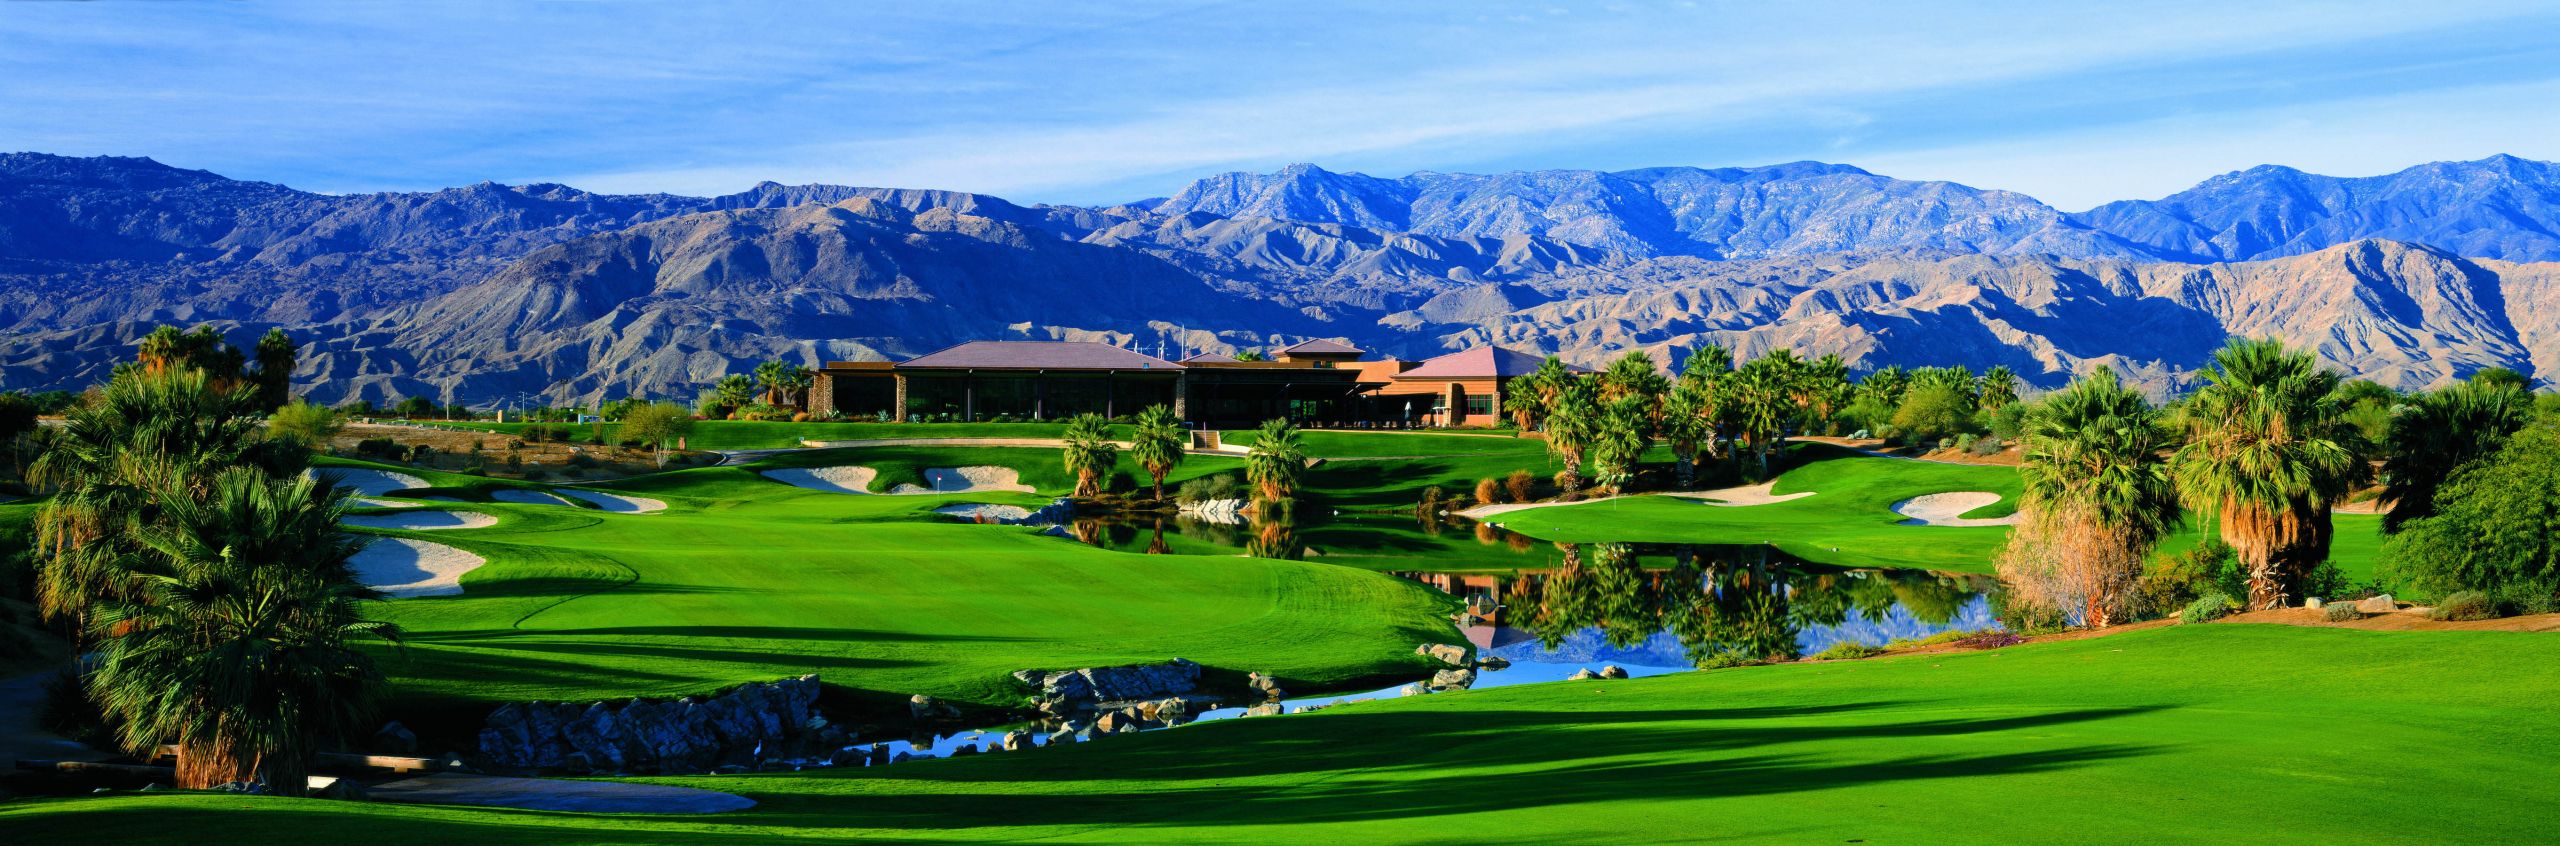 Palm Dessert Golf
 Firecliff Golf Course at Desert Willow Golf Resort